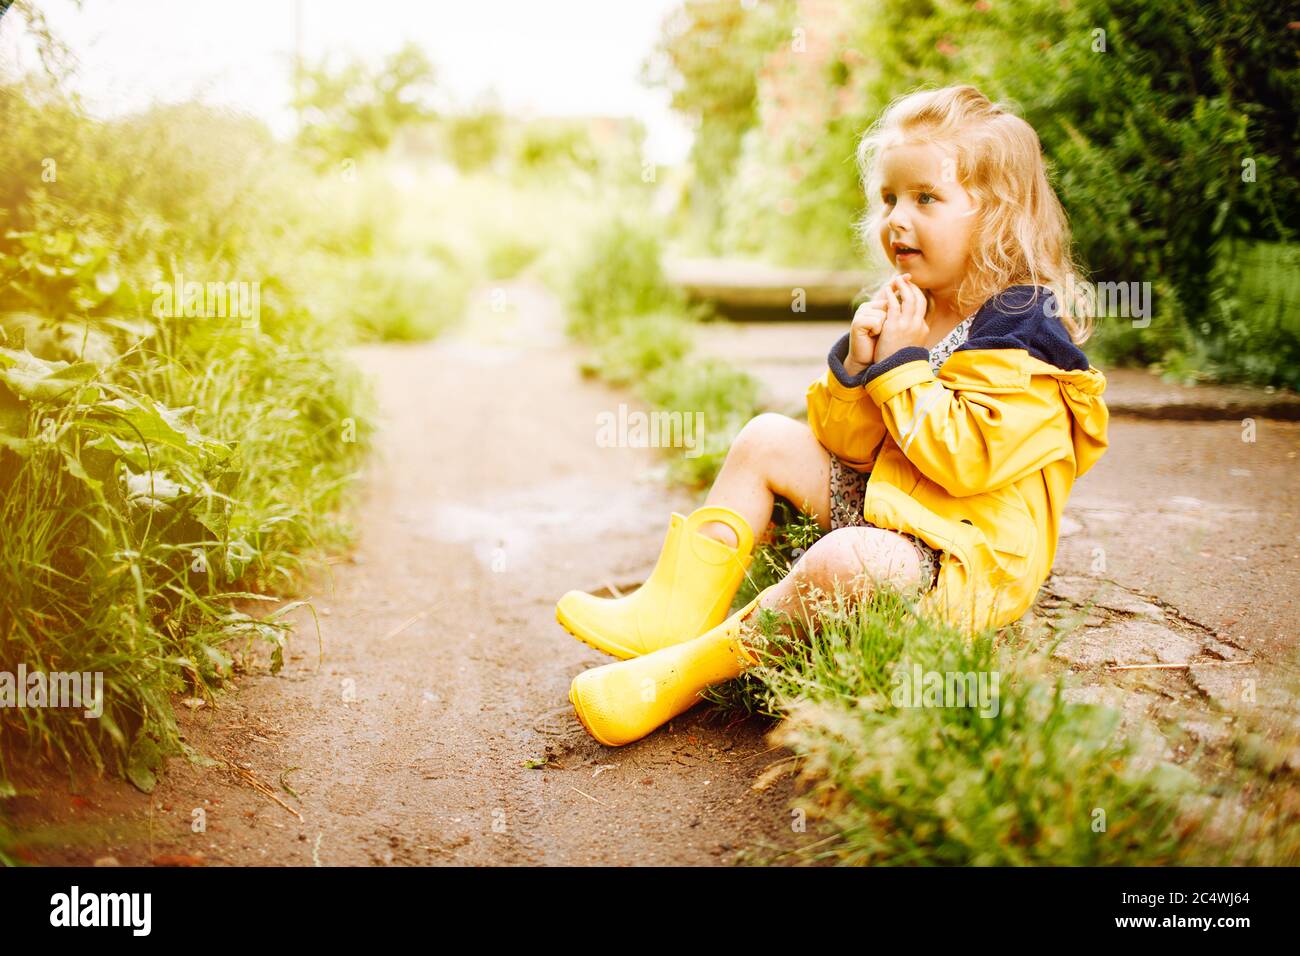 Una niña alegre con una camiseta amarilla se sienta en el suelo con las  piernas dobladas: fotografía de stock © Kulyashina #549053046